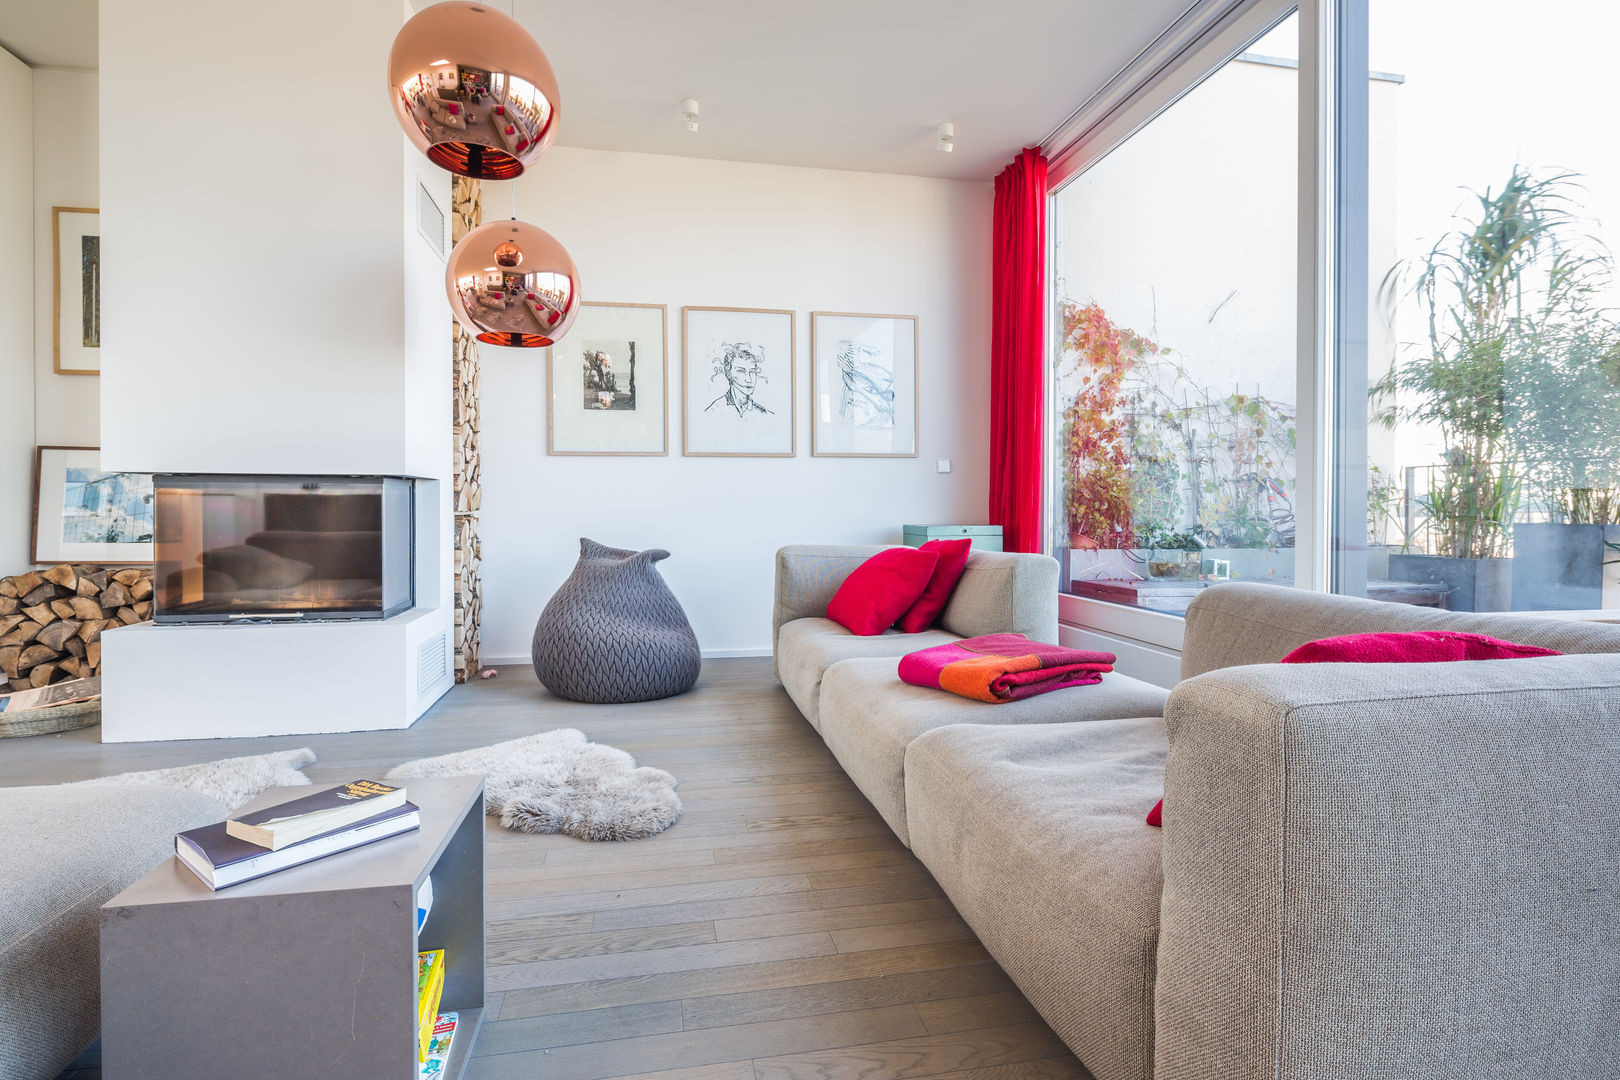 10 Richtig Coole Ideen Für Ein Modernes Wohnzimmer | Homify with Coole Wohnzimmer